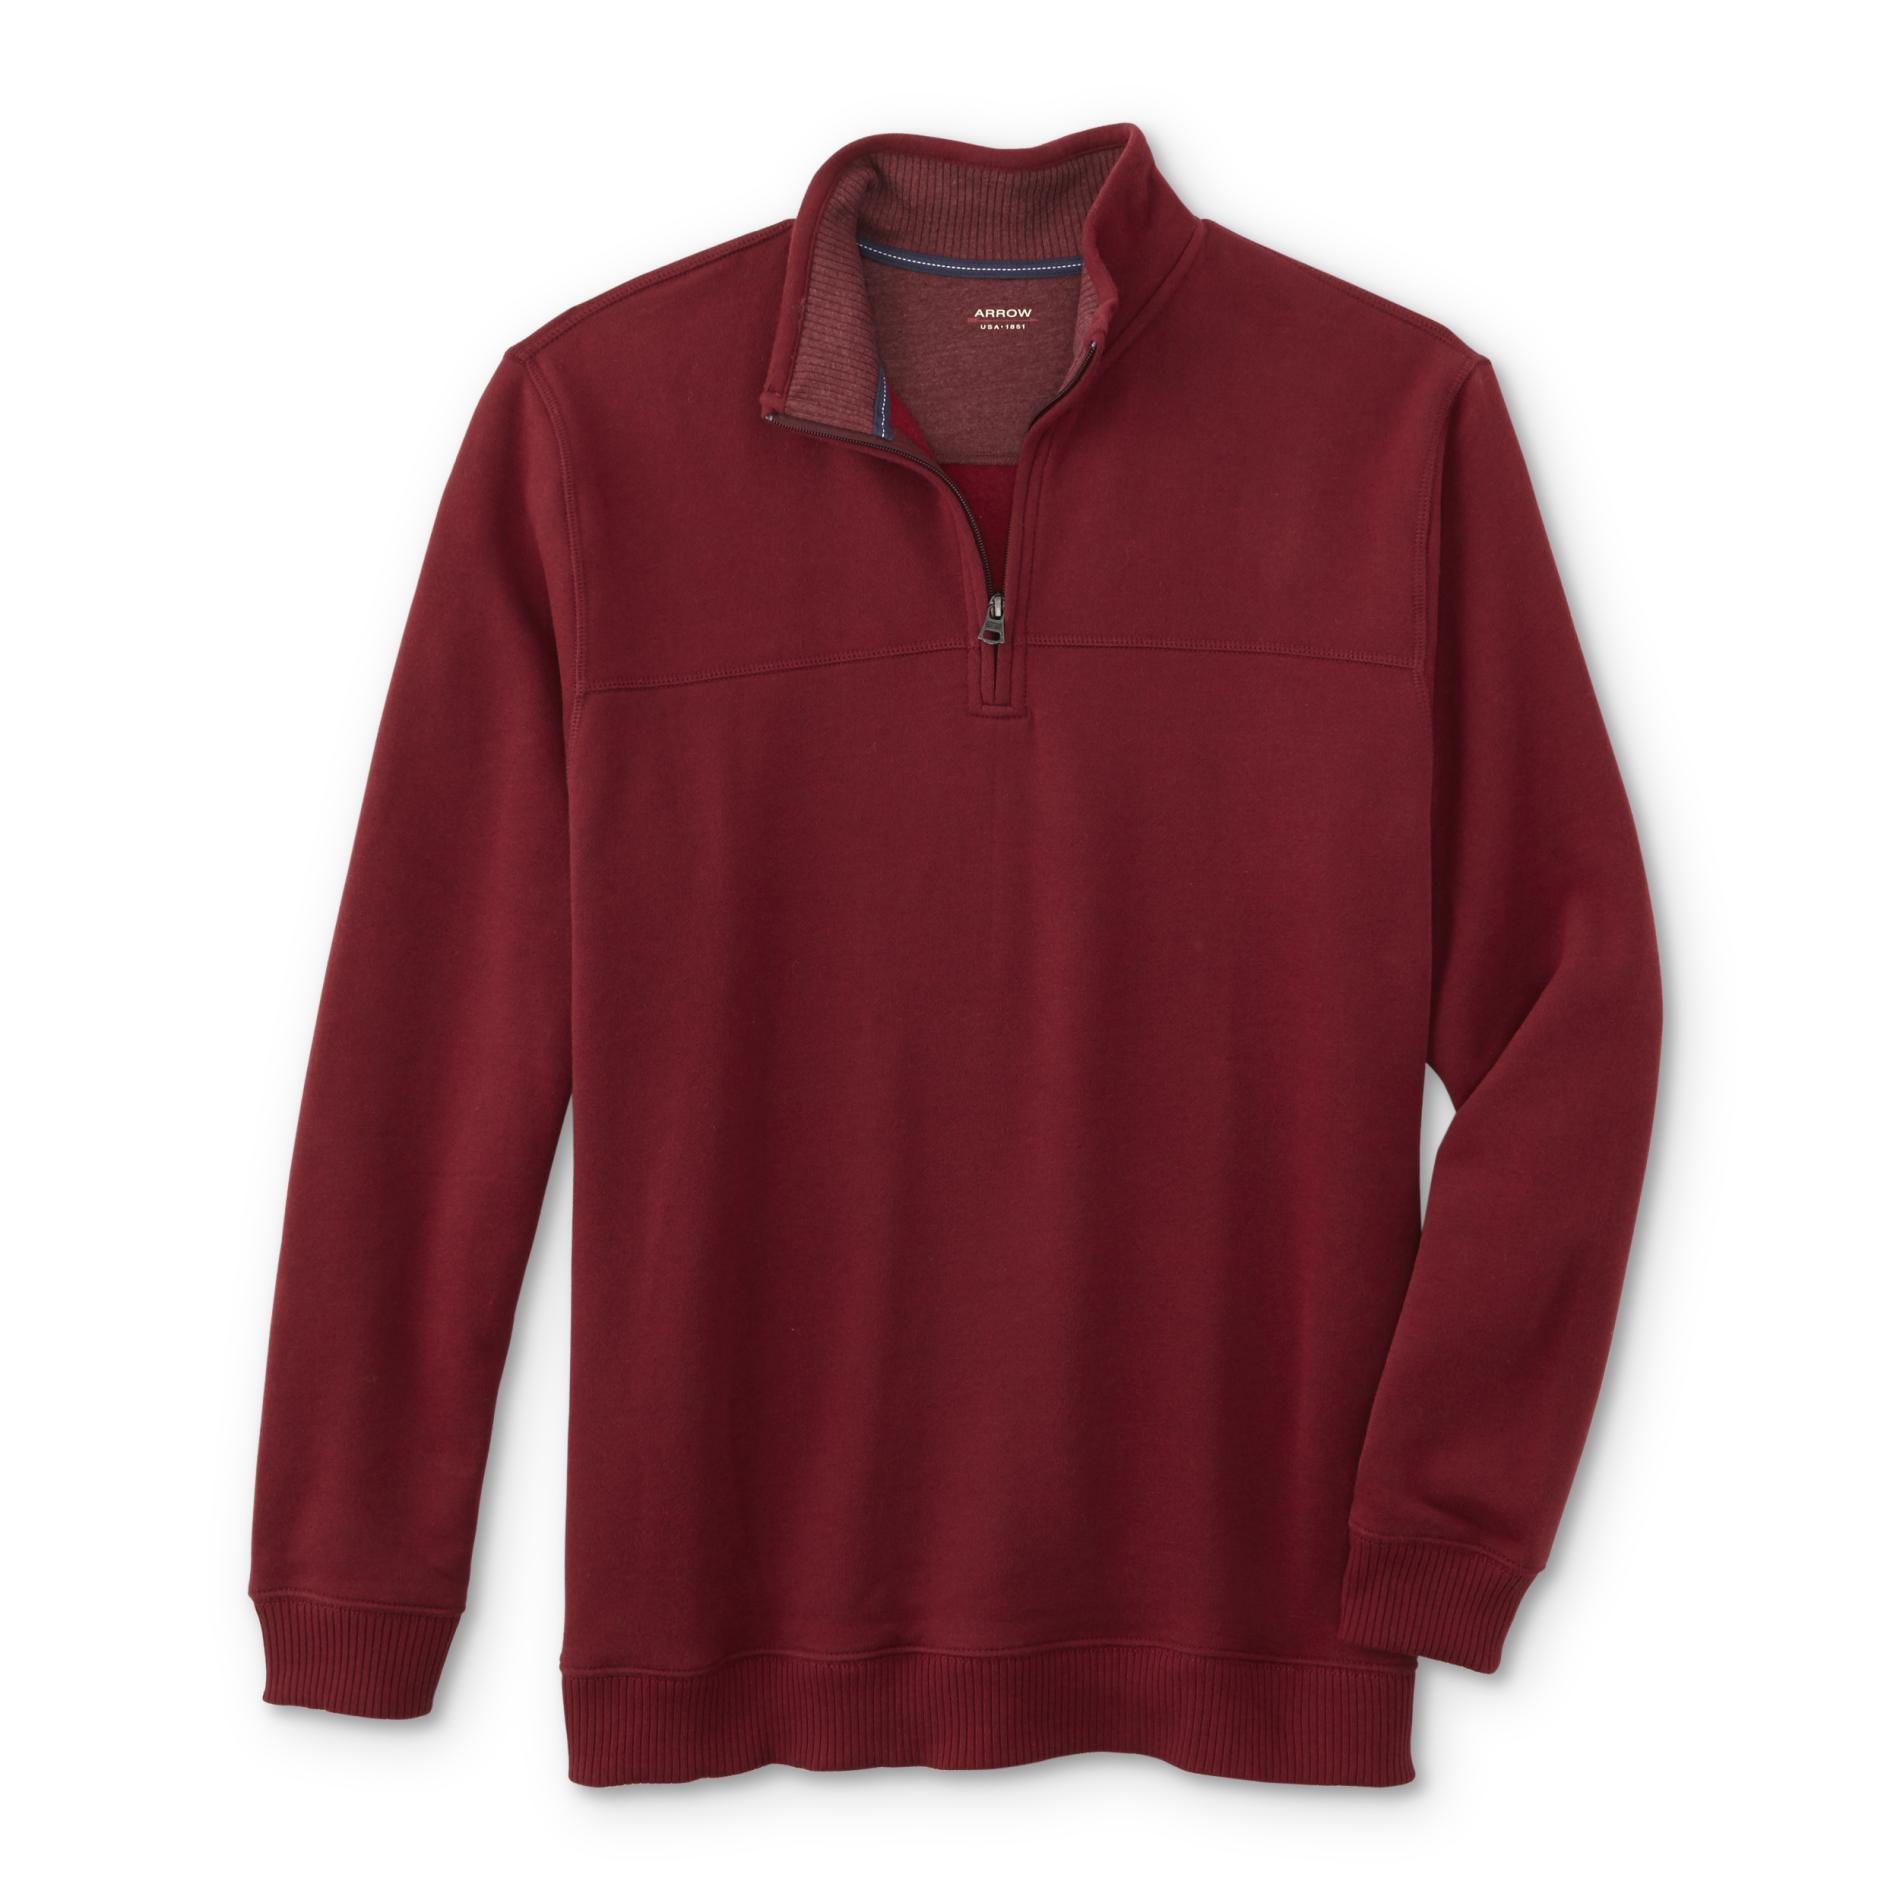 Arrow Men's Quarter-Zip Fleece Sweatshirt